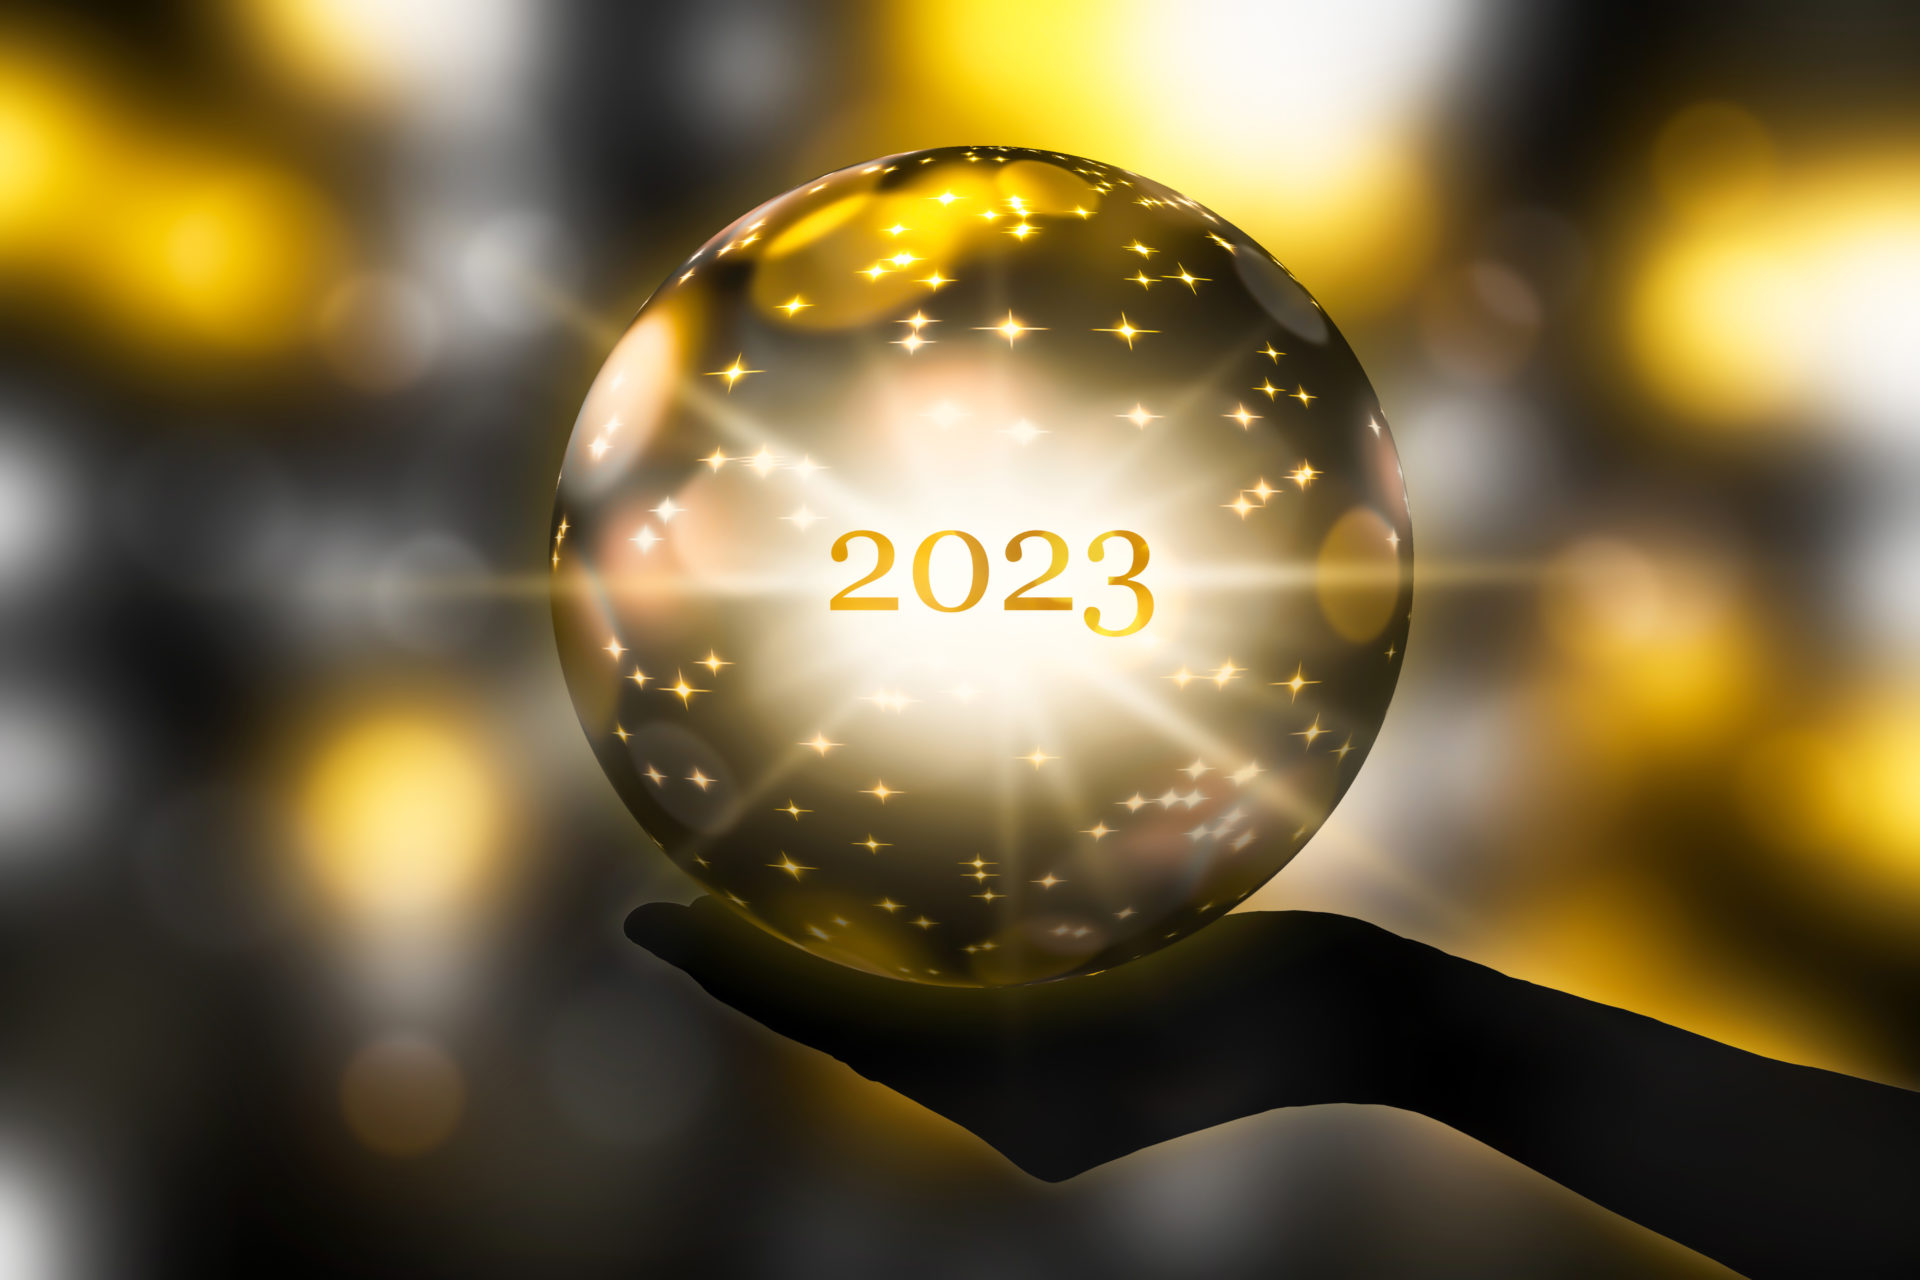 2023 crystal ball